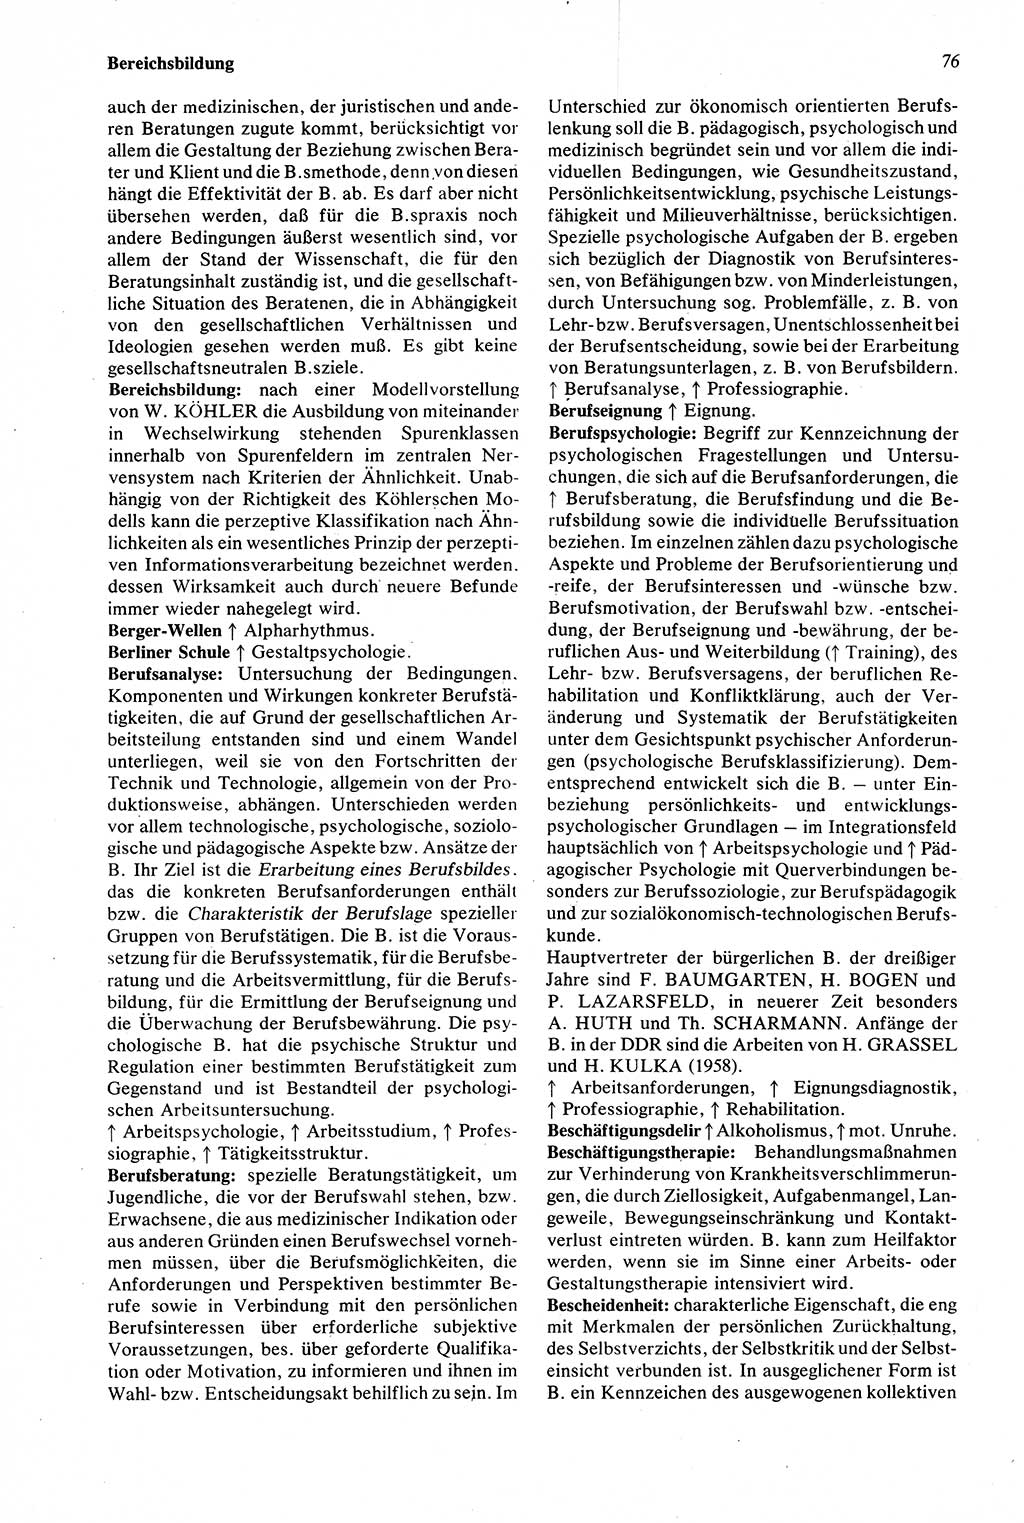 Wörterbuch der Psychologie [Deutsche Demokratische Republik (DDR)] 1976, Seite 76 (Wb. Psych. DDR 1976, S. 76)